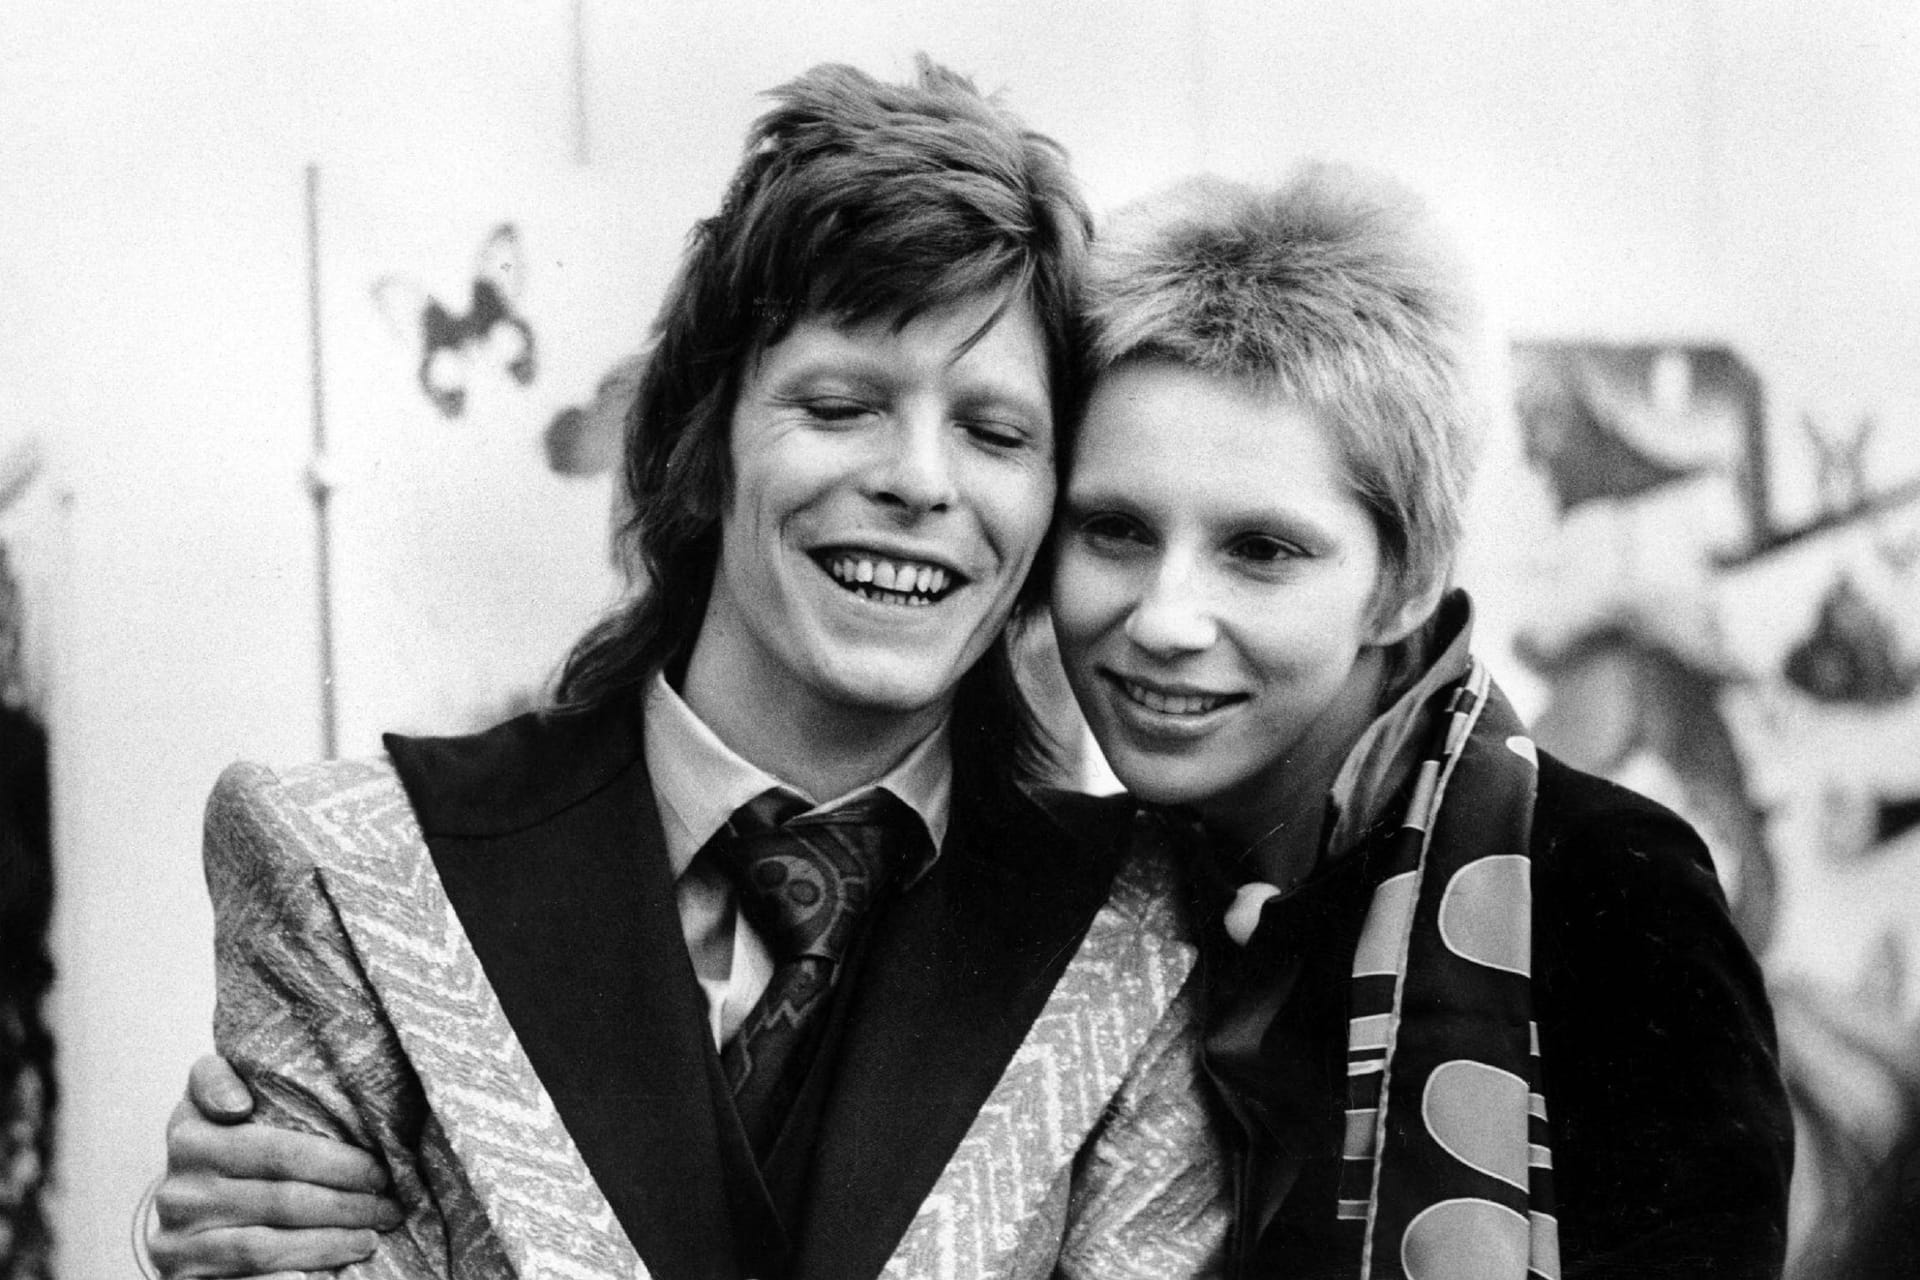 David und Angela Bowie: 1973 soll die Autorin ihren damaligen Ehemann zusammen mit Mick Jagger im Bett erwischt haben. Die beiden führten eine offene Ehe. So habe auch Angela selbst eine Affäre mit dem Rolling-Stones-Frontmann gehabt.